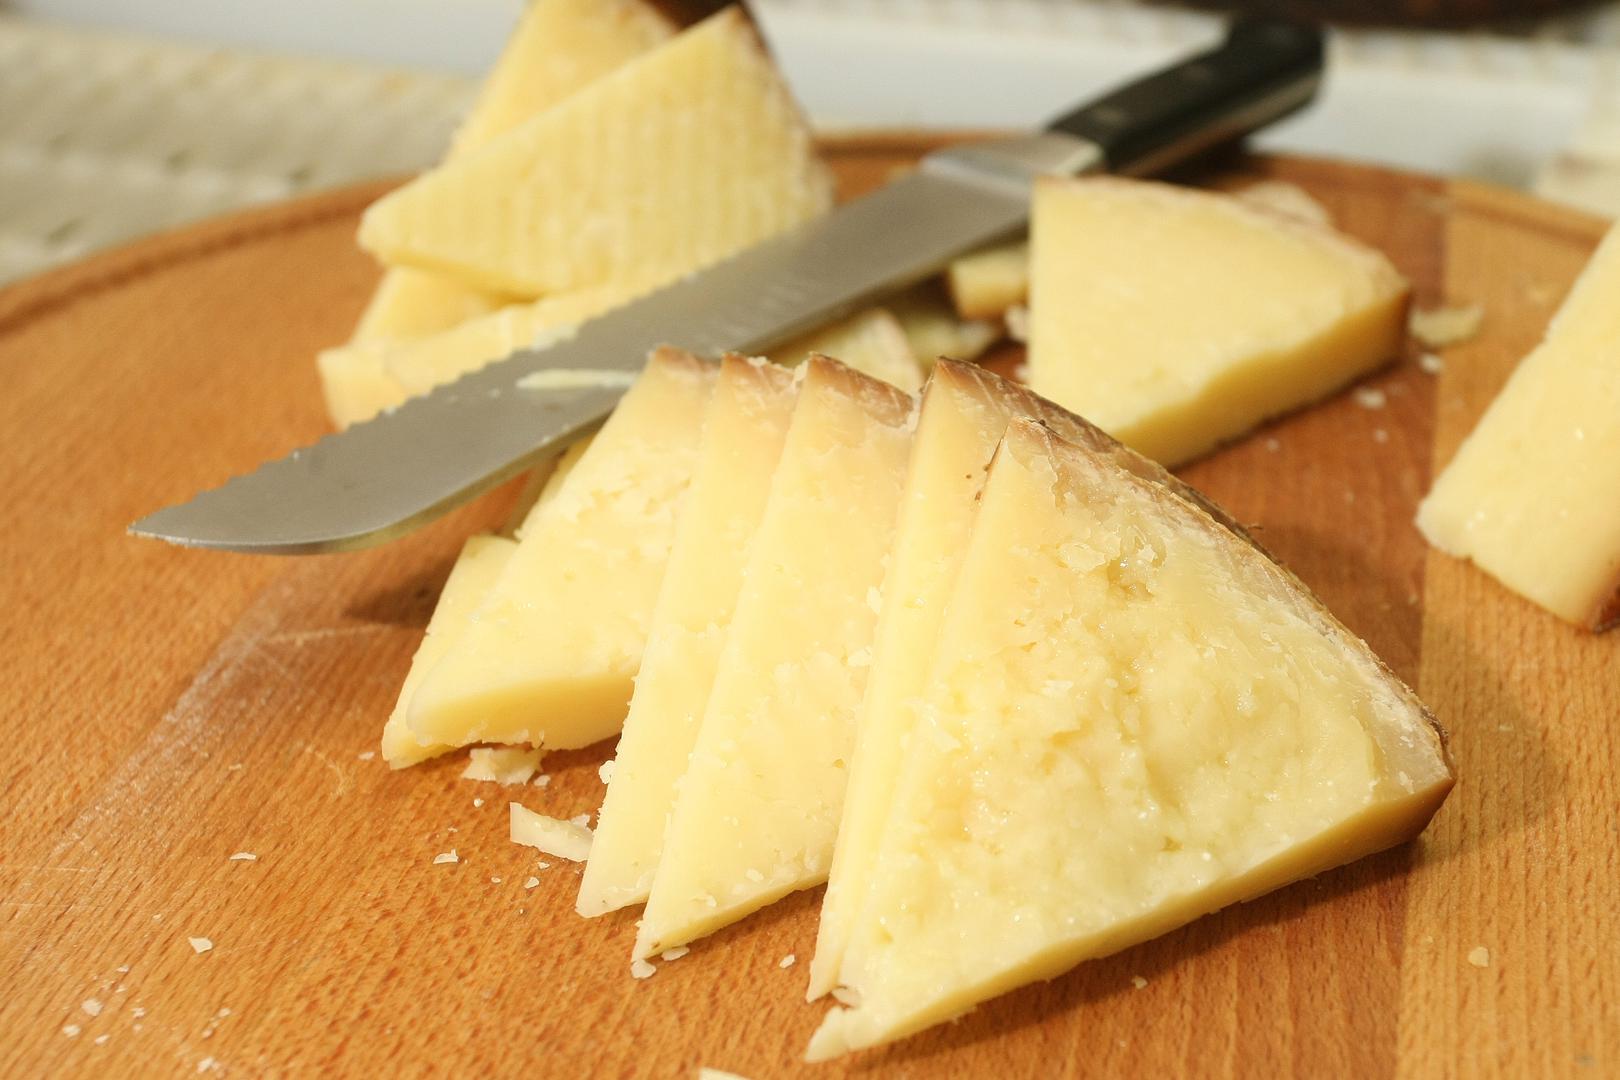 4. Paški sir: Paški sir je tvrdi, slan ovčji sir s otoka Paga. Dobiva prepoznatljiv okus zahvaljujući ovčjoj prehrani začinskim biljem. Najbolje ga je poslužiti na sobnoj temperaturi kako bi se istaknuo pikantan, slan okus. Mještani uživaju u siru sa suhomesnatim proizvodima, grožđem i medom. 